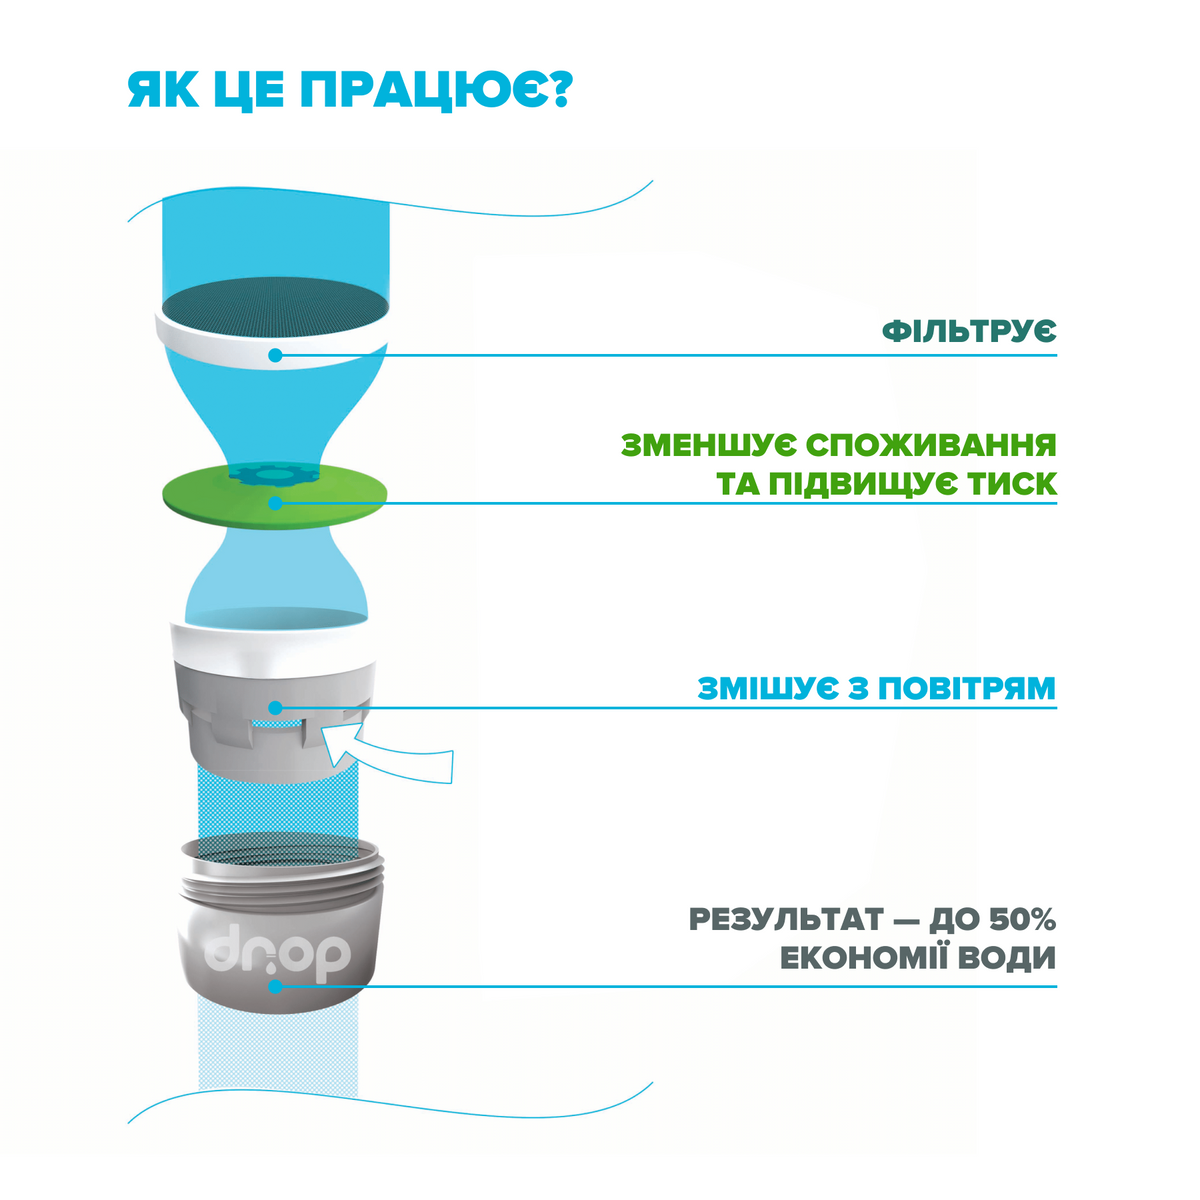 Водосберегающий аэратор DROP SP24E для смесителя - Экономия 50%, 6 л/мин, внешняя М 24.5 мм